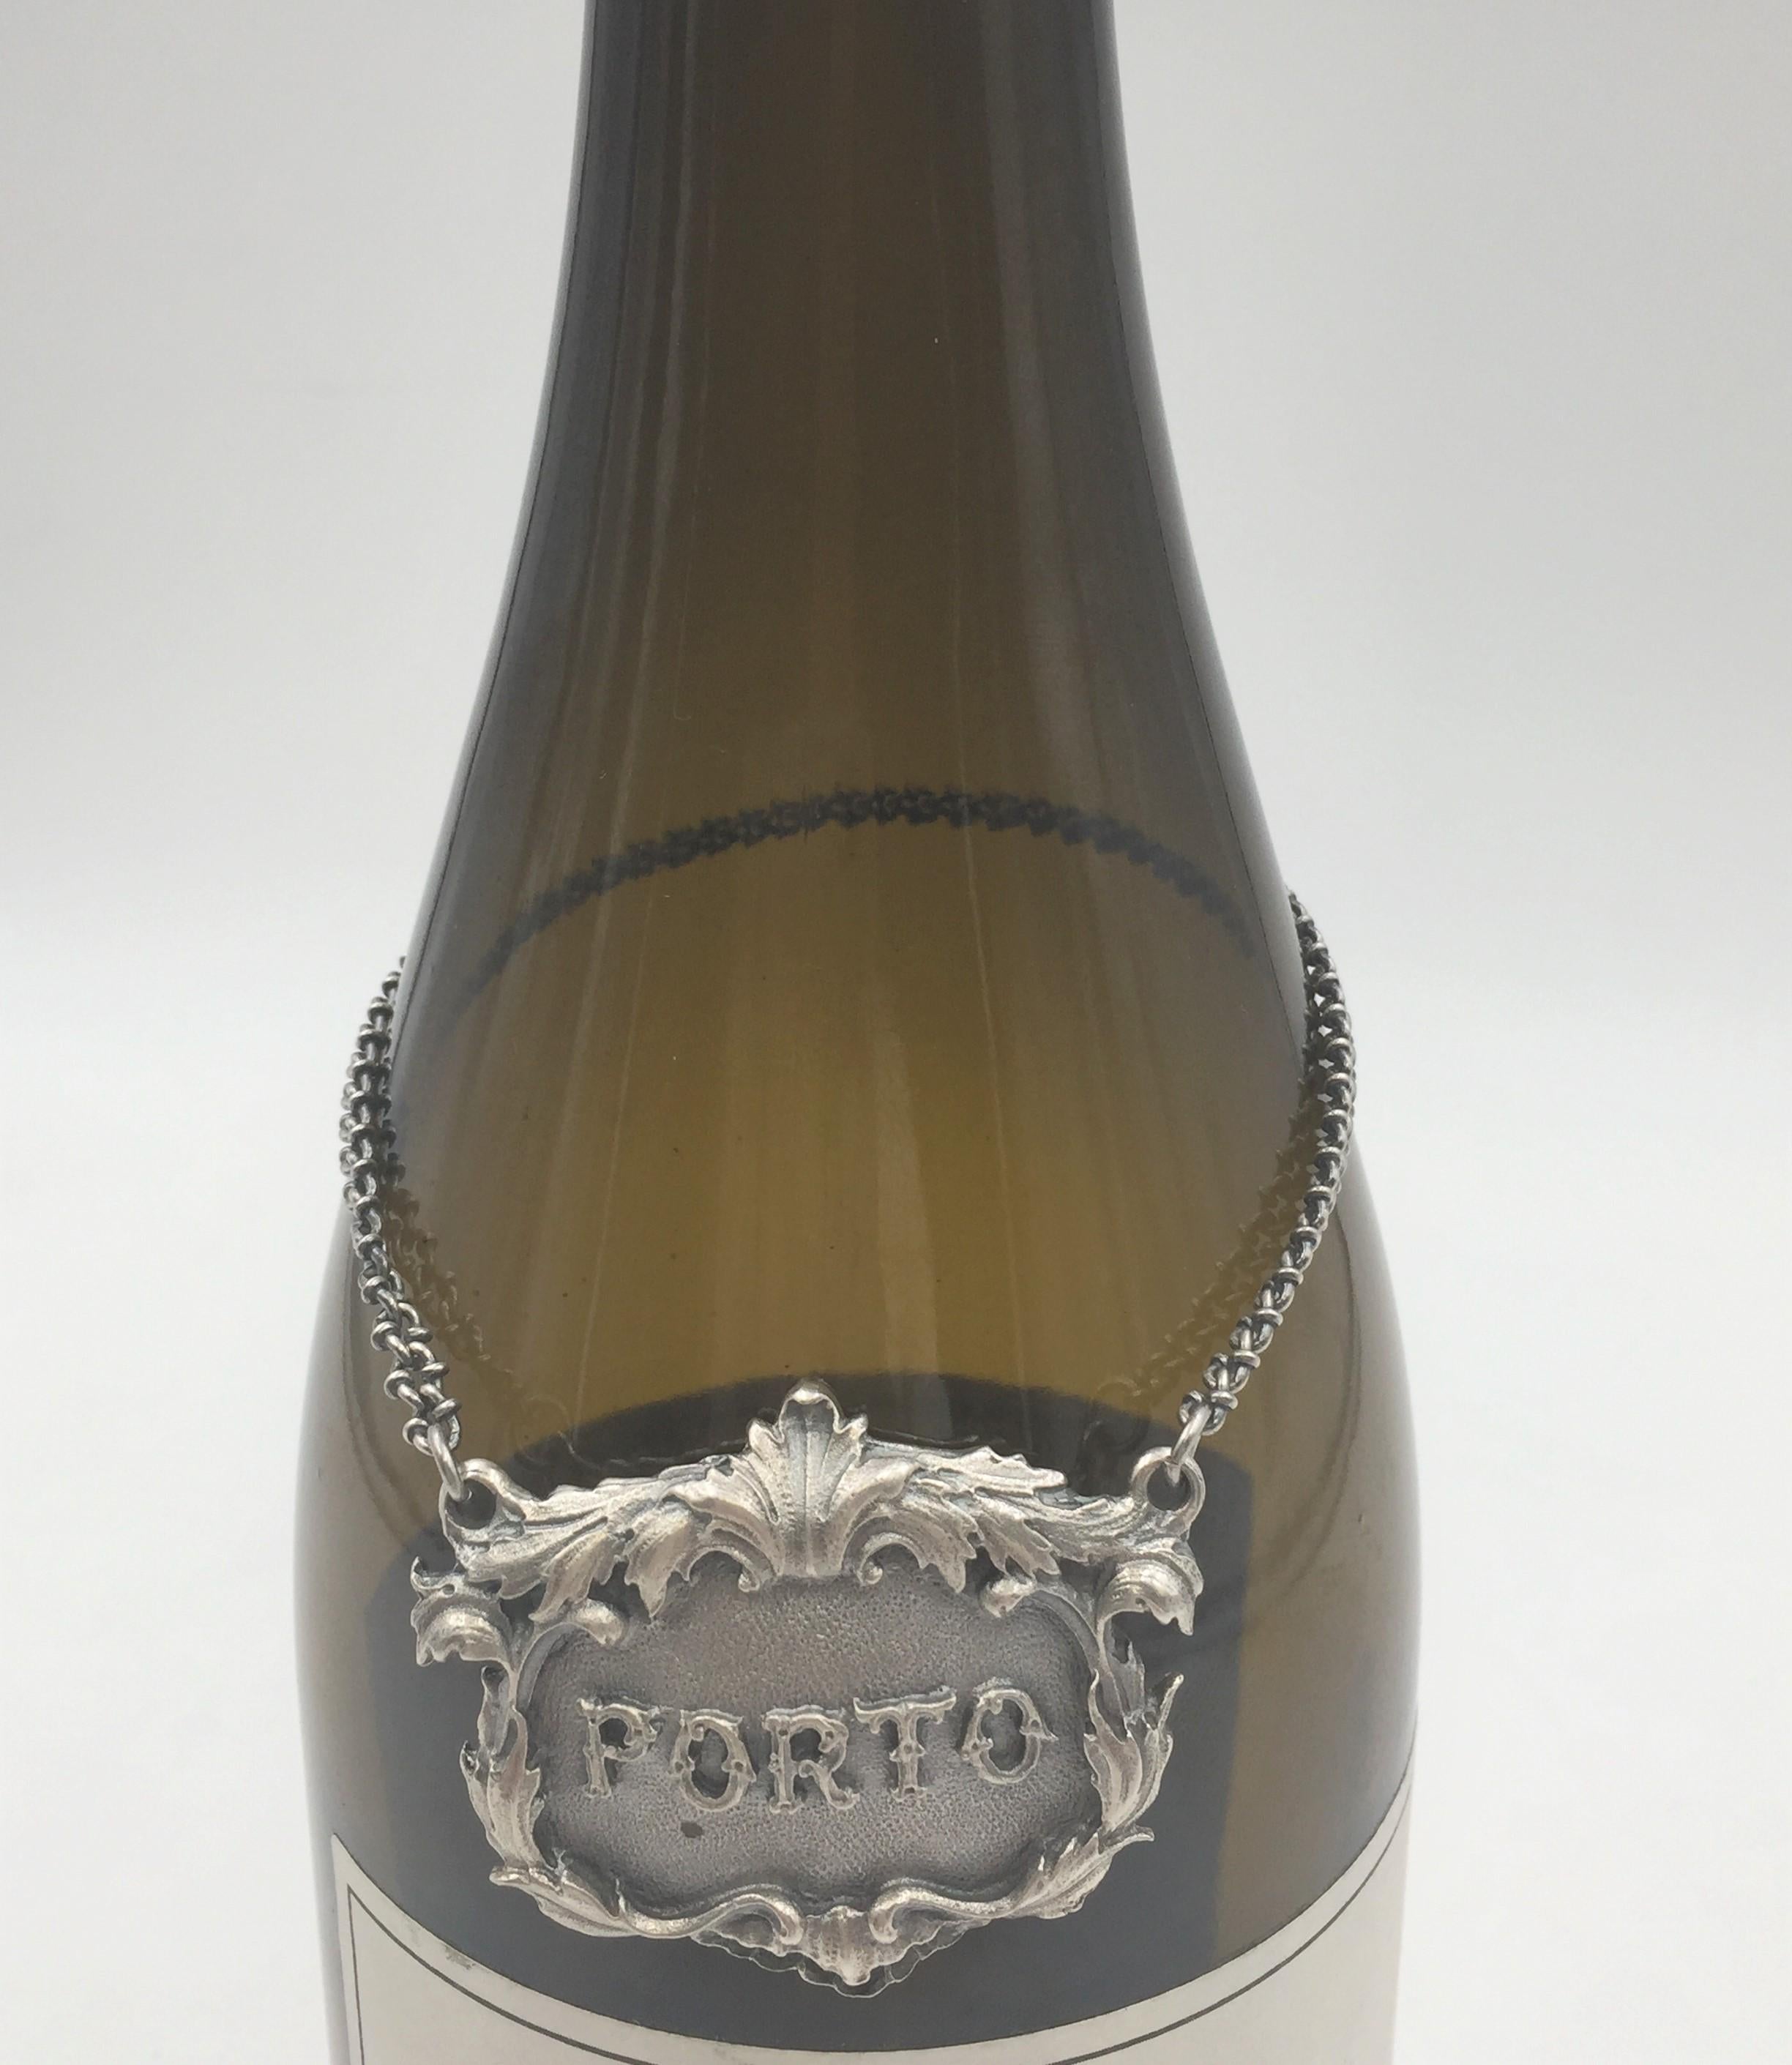 Seltenes Etikett aus 925er Sterlingsilber für einen Weinkrug. PORTO ist auf der Vorderseite in der Mitte eingeprägt.

Markierungen auf der Rückseite: Gianmaria Buccelatti (Unterschrift und italienische Herstellermarke), ITALY, 925 (eingekreistes